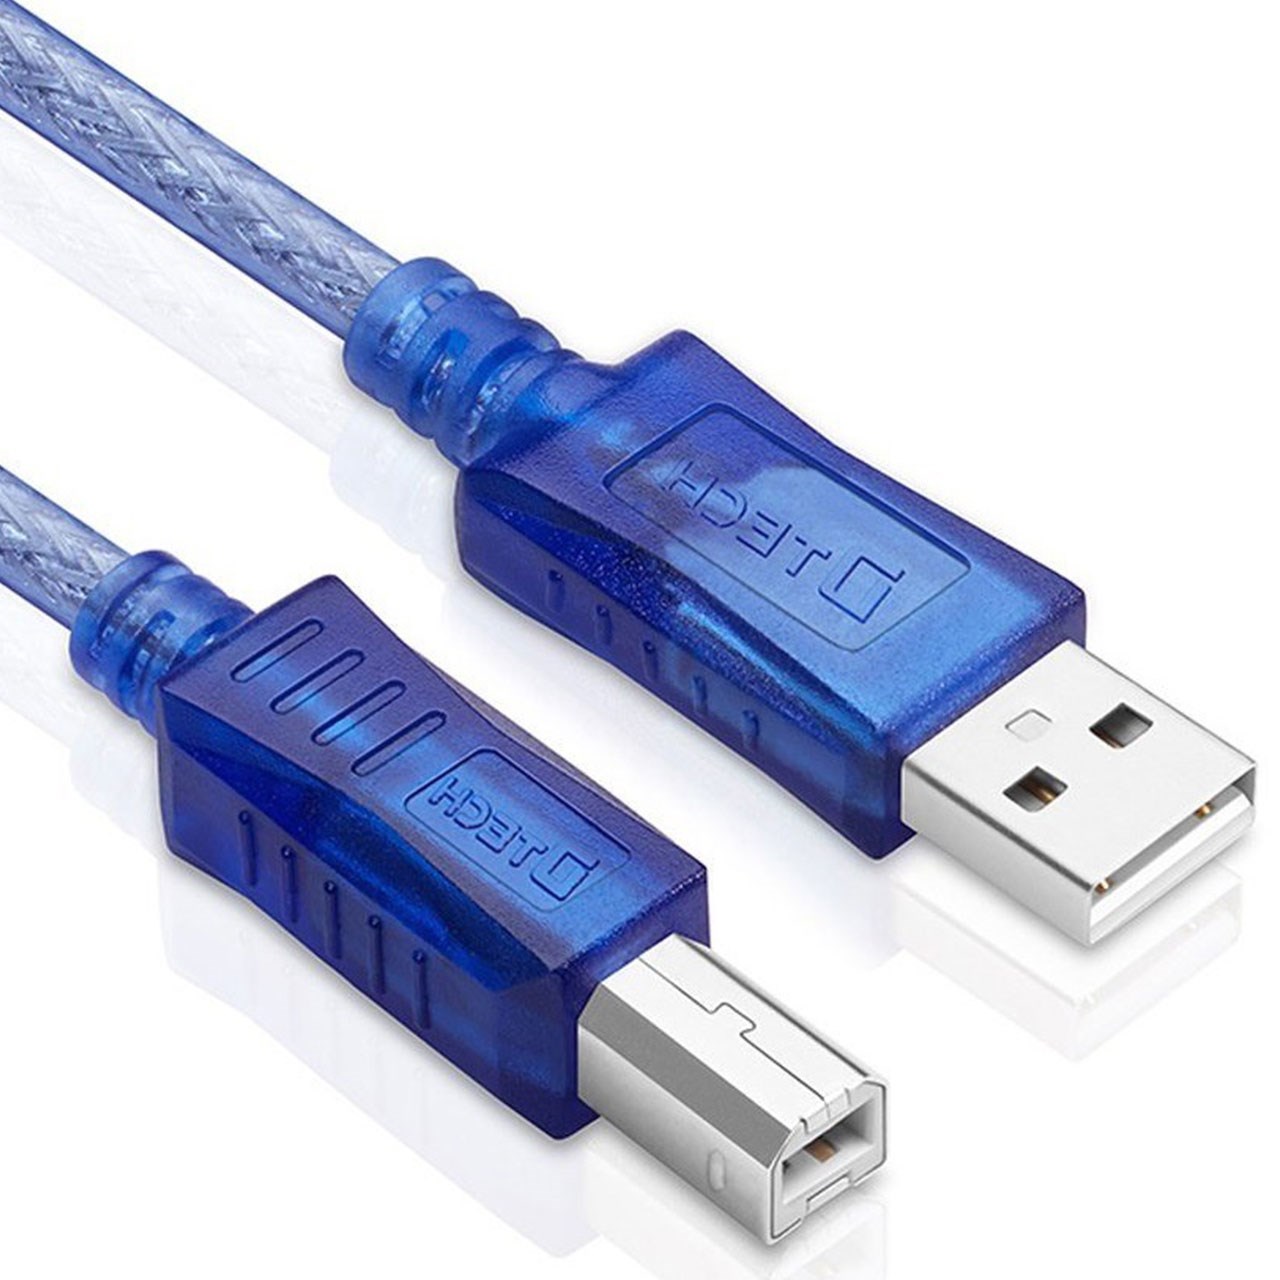 کابل رابط پرینتر USB 2.0 دیتک مدل DT-CU0093 به طول 1.8 متر